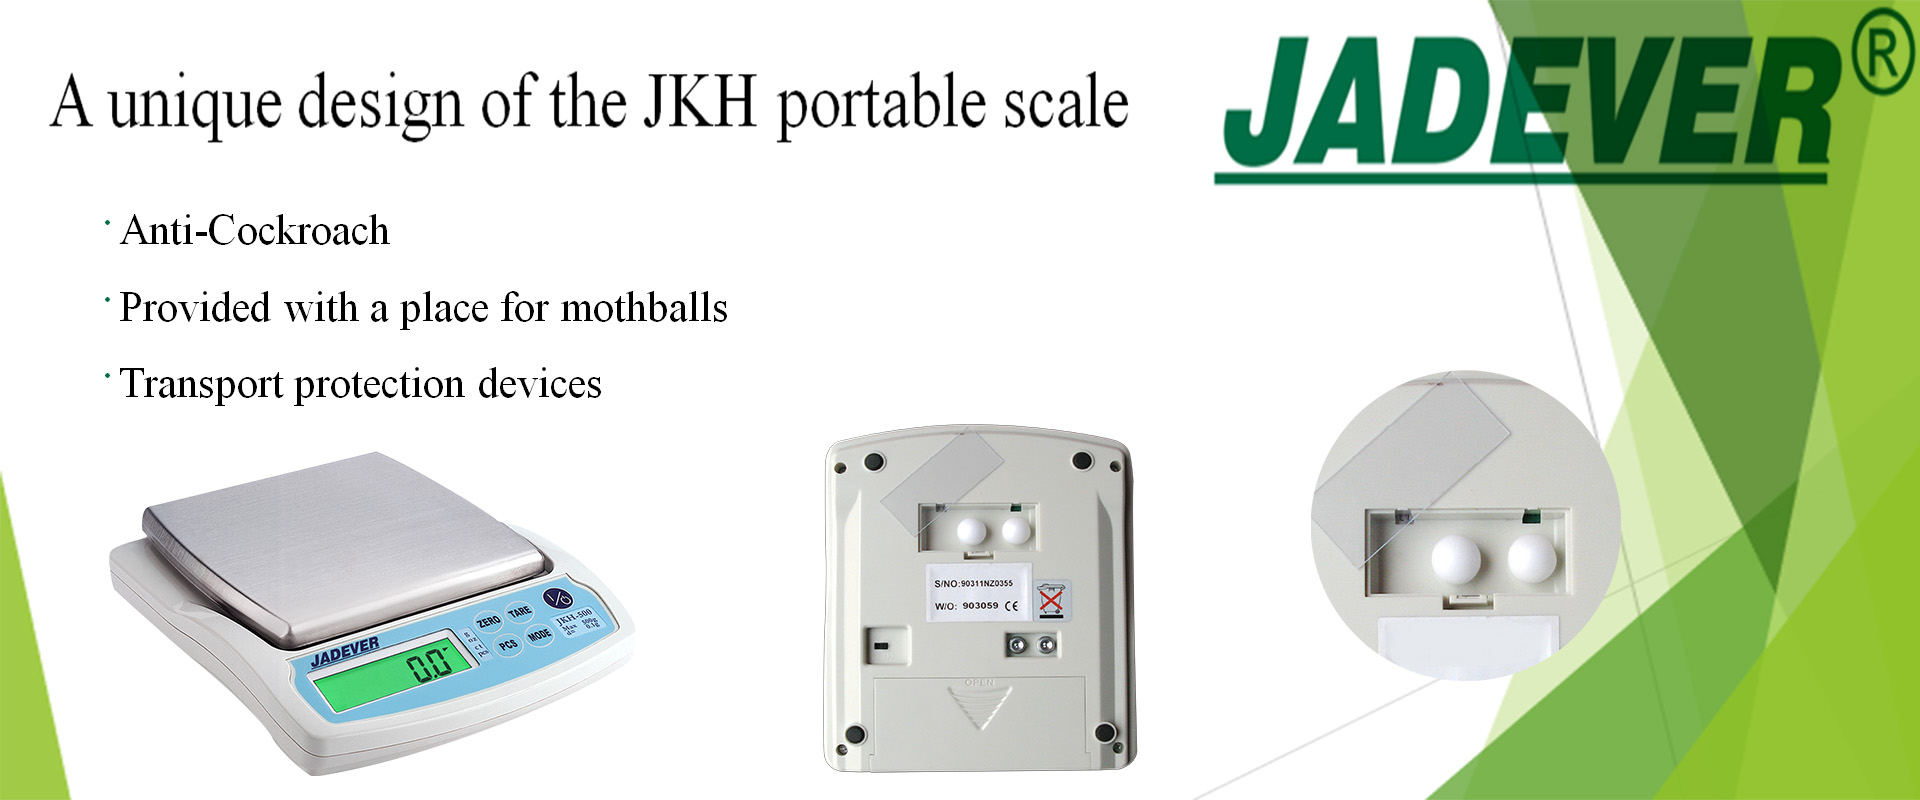 Une conception unique de la balance portable JKH
